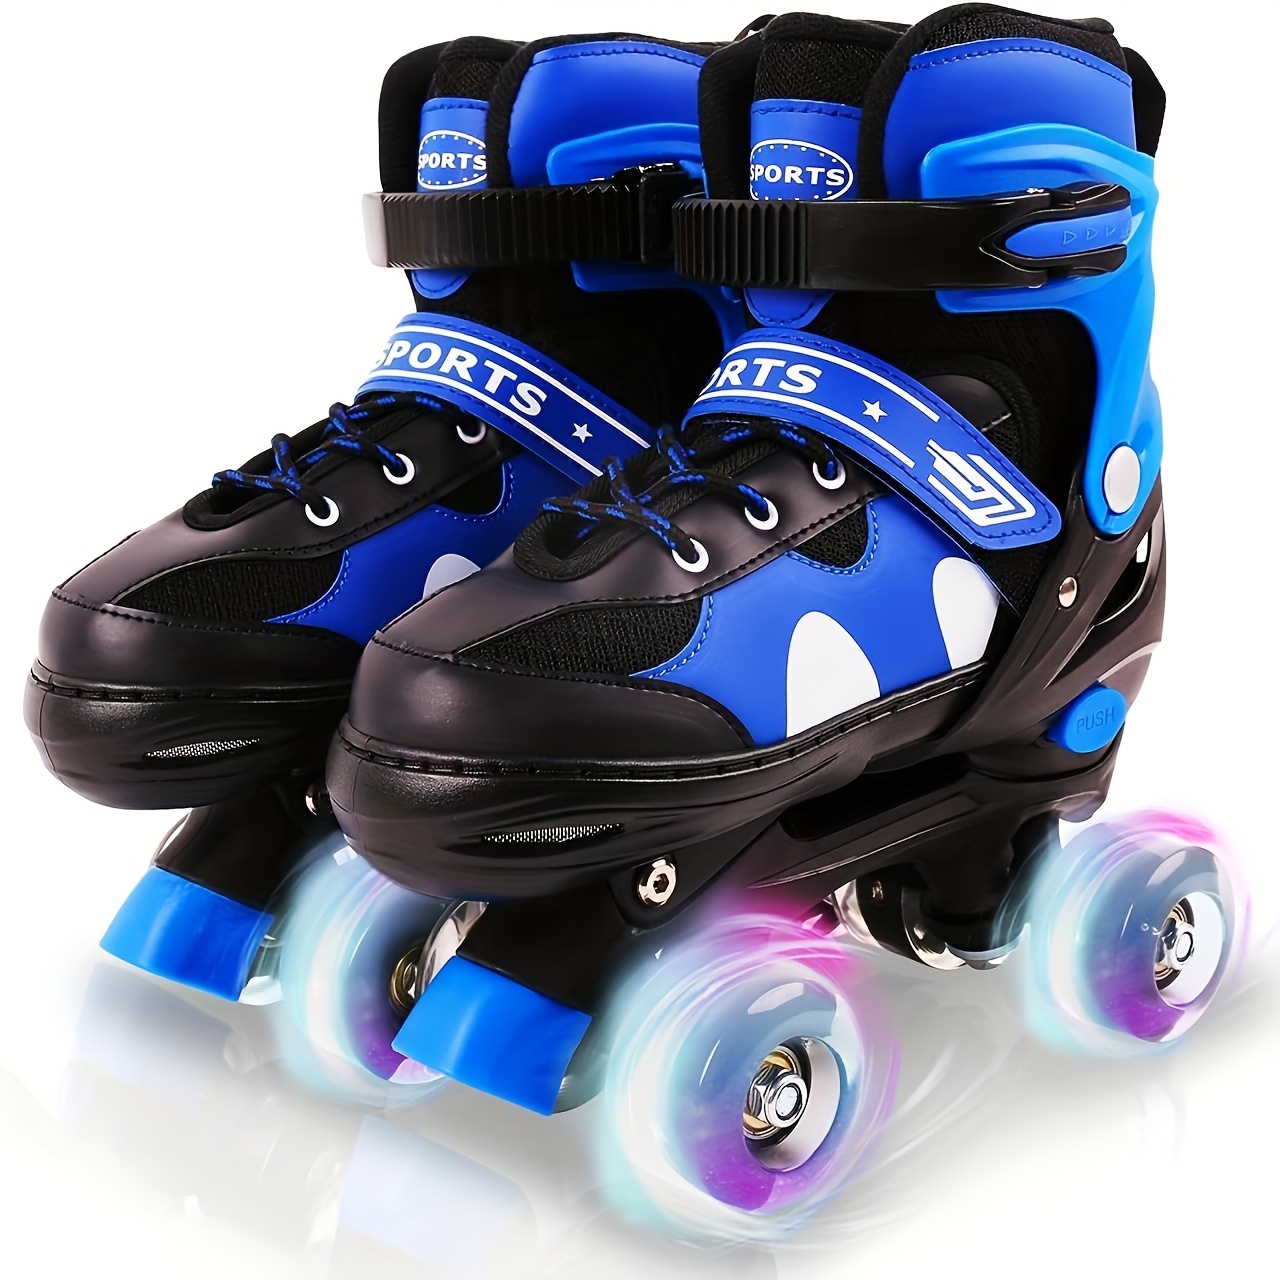 Cómo elegir unos patines para niños?